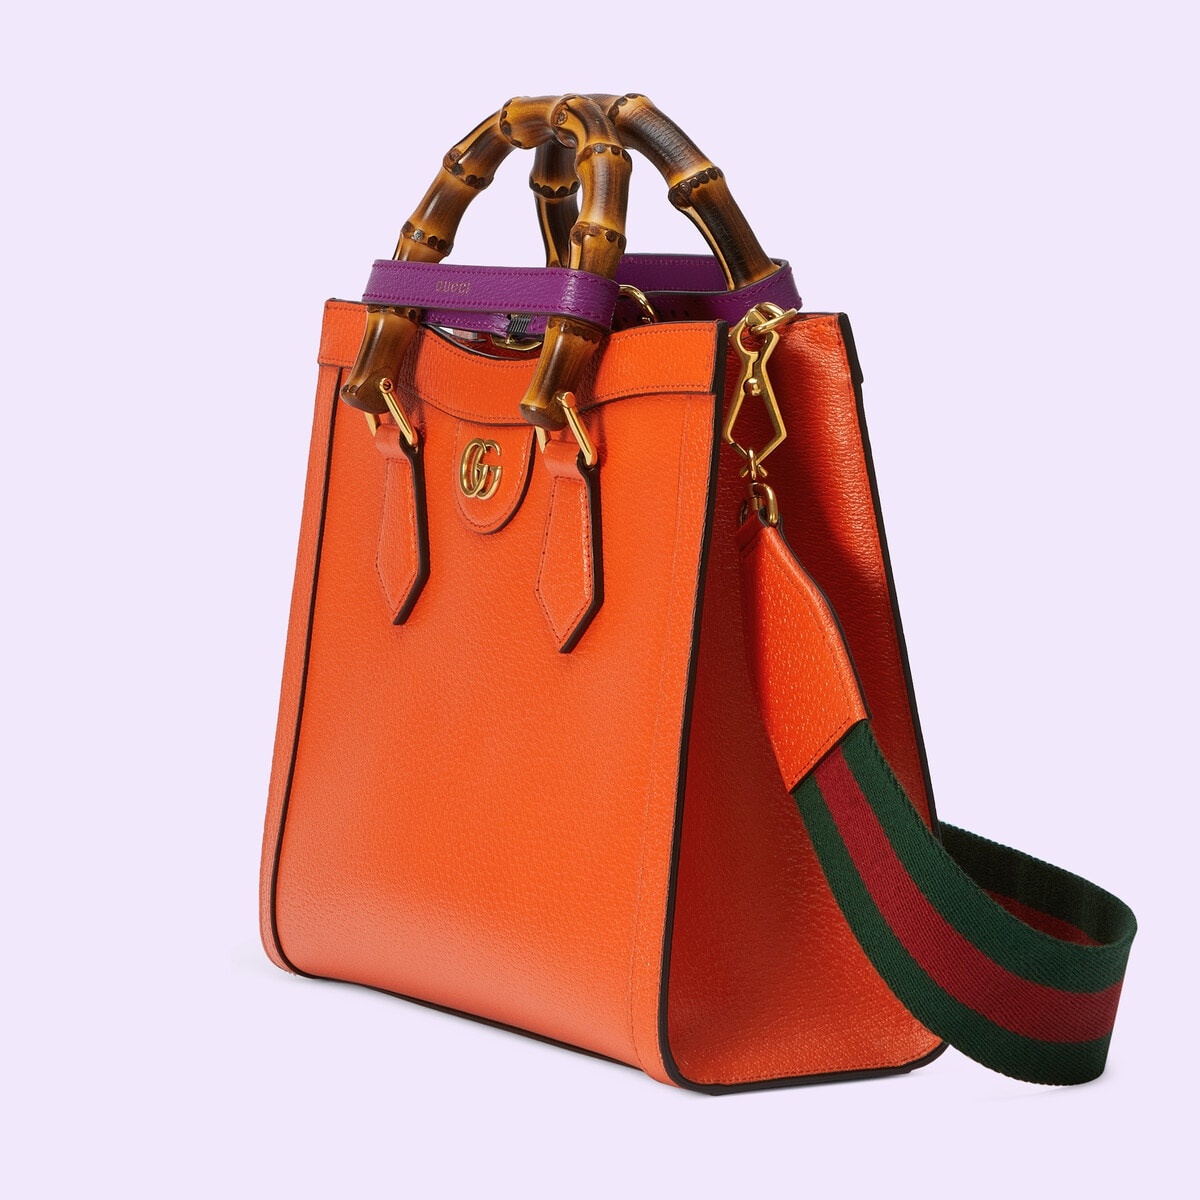 Gucci Diana small tote bag - 2